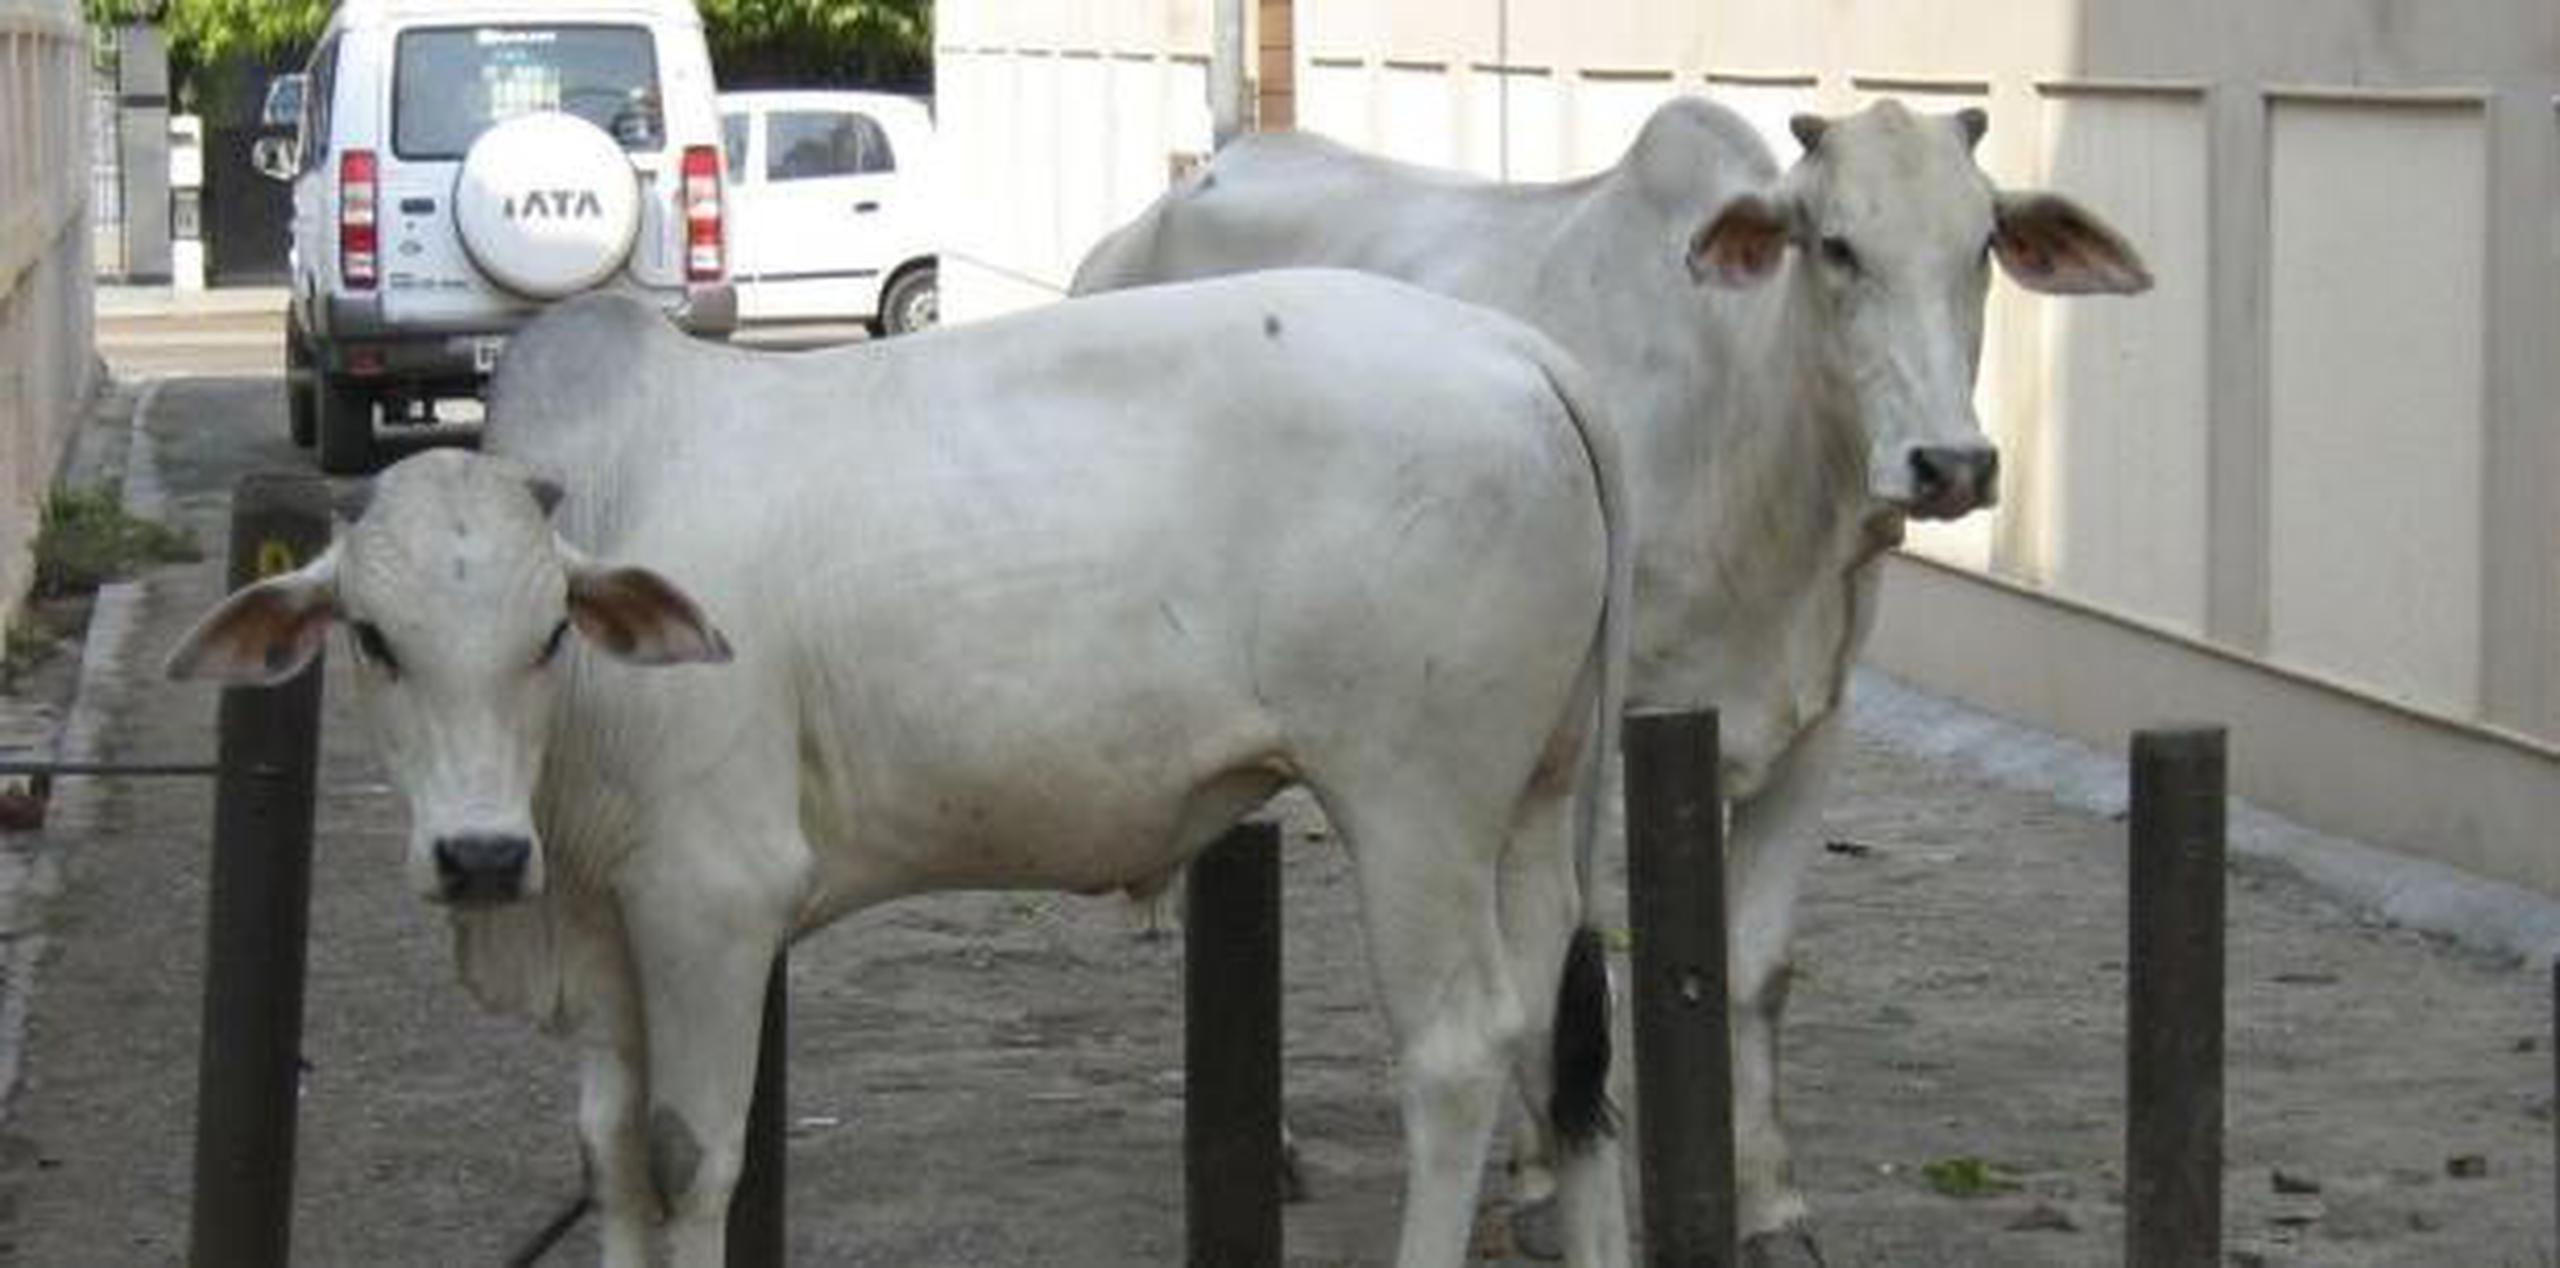 Las vacas son consideradas sagradas en la nación mayoritariamente hindú. (Archivo)